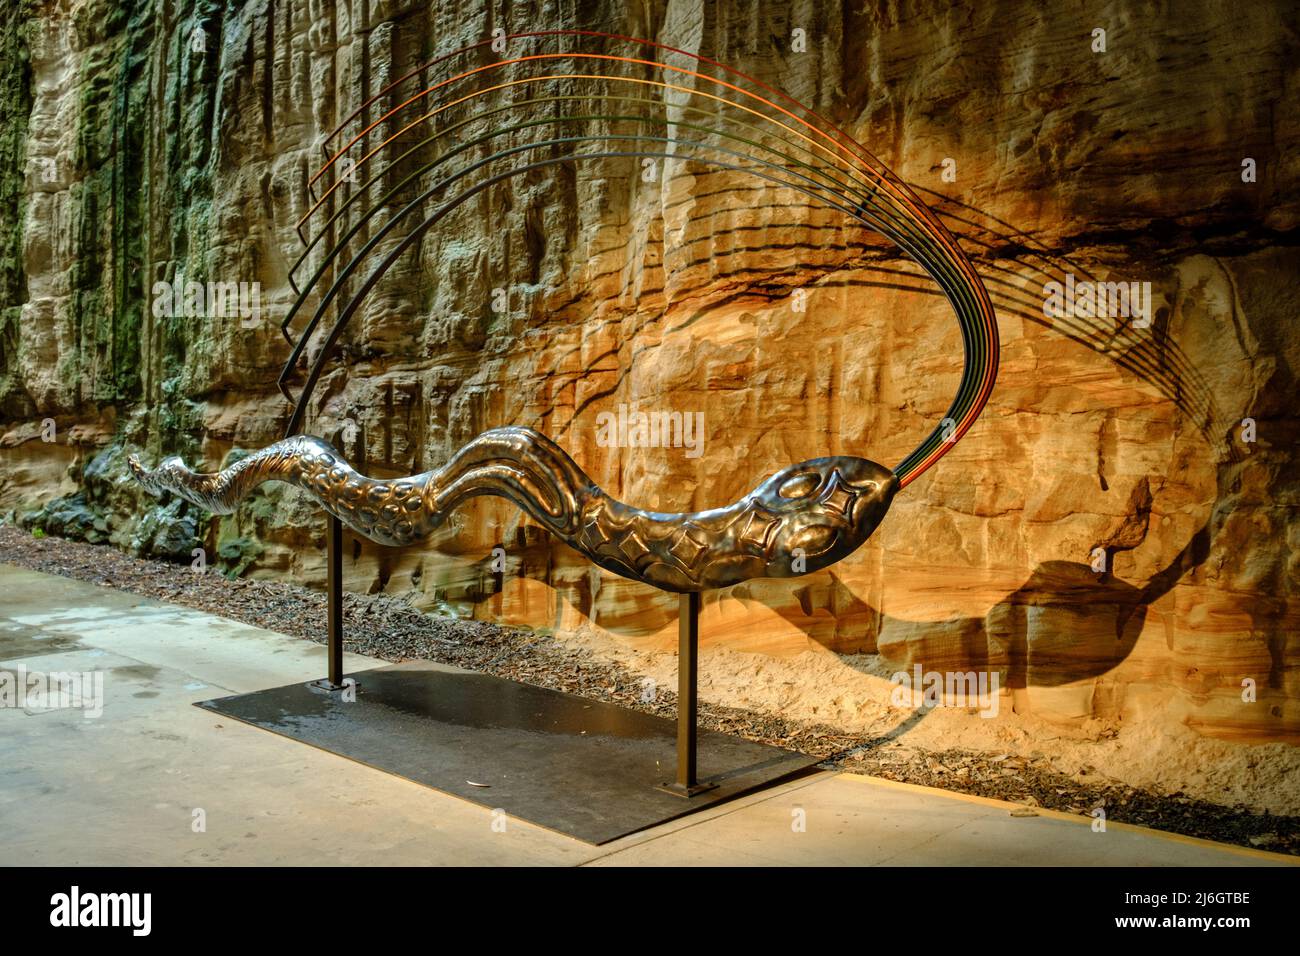 Save Our Ngatji (Rainbow Serpents), de Badger Bates, en colaboración con Matt Mewburn y Eveleigh Works, Sydney Biennale 2022, Rivus, Exhibition at Foto de stock